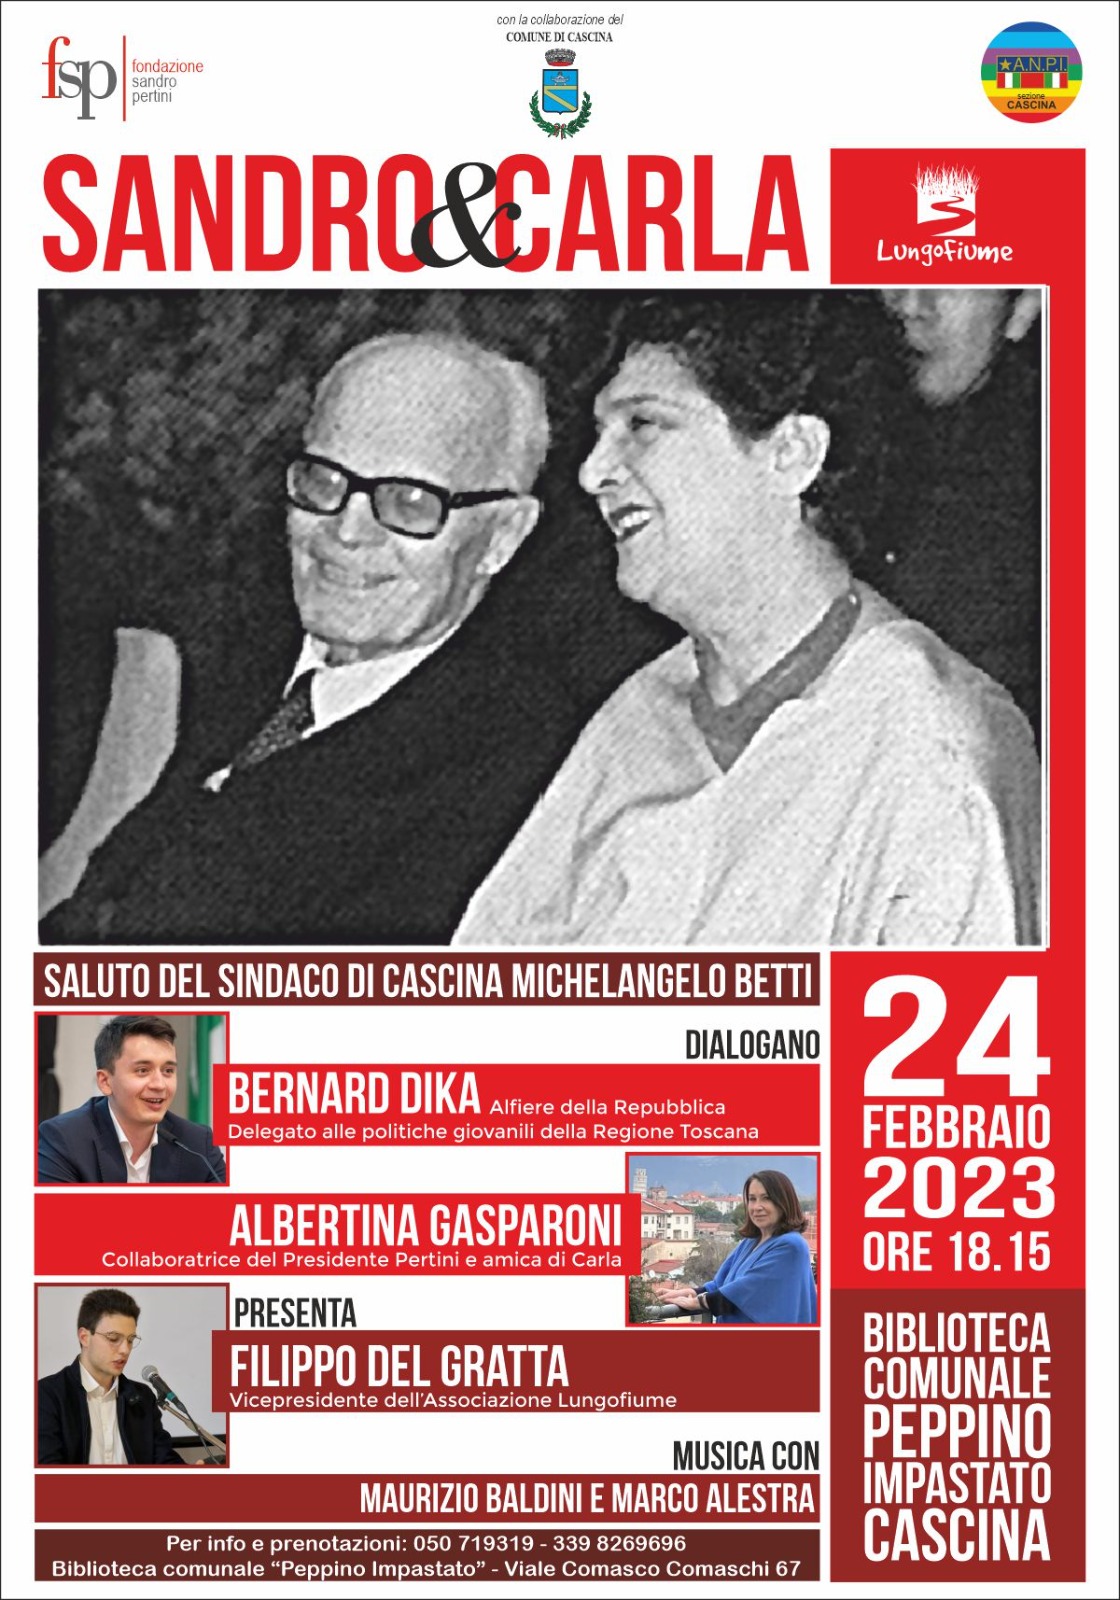 "Sandro & Carla", la figura istituzionale e privata del Presidente Pertini